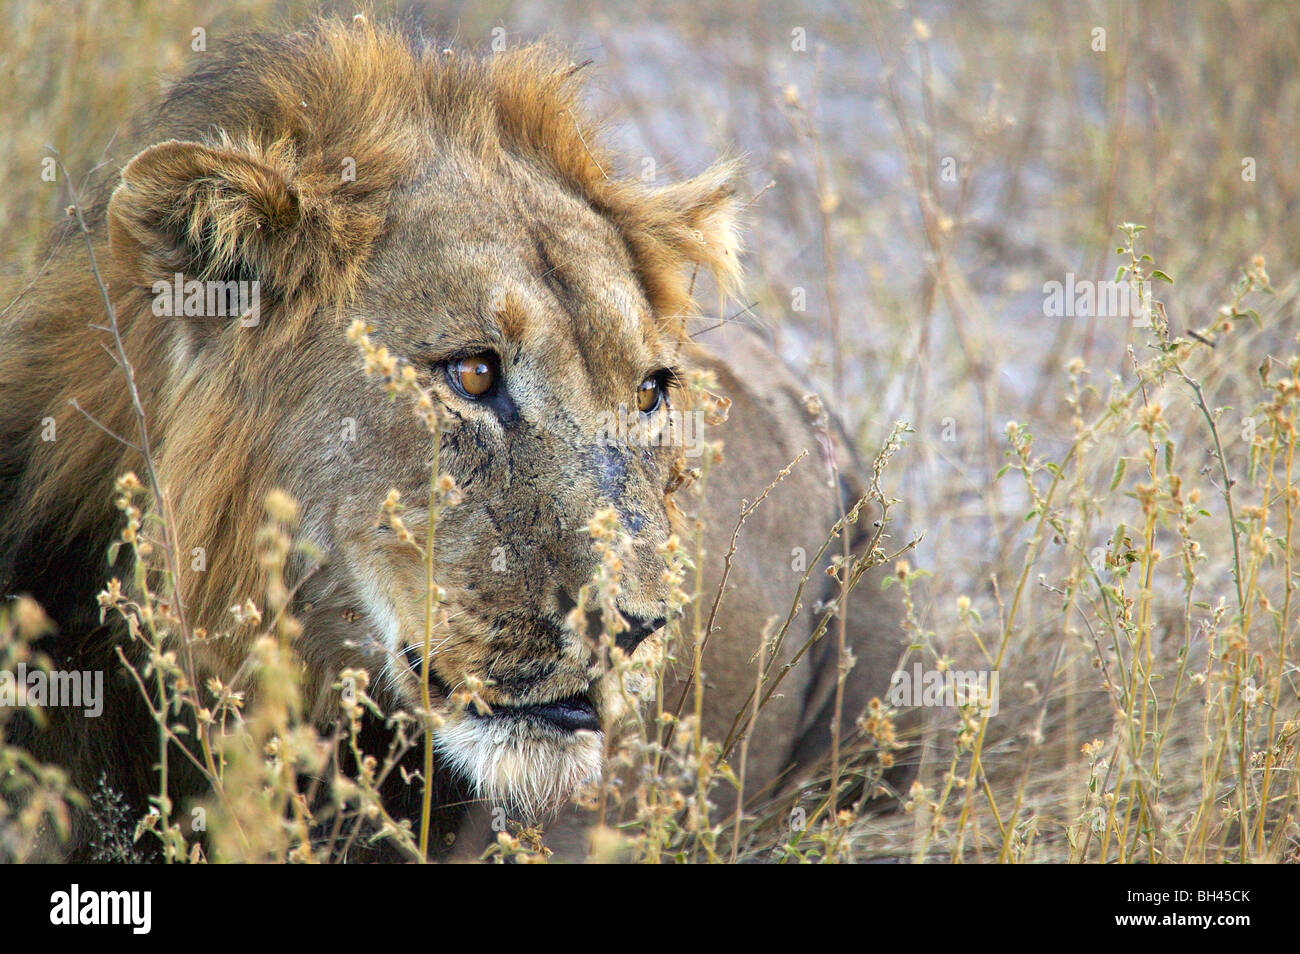 León macho (Panthera leo) con cicatrices mirando pensativo. Foto de stock